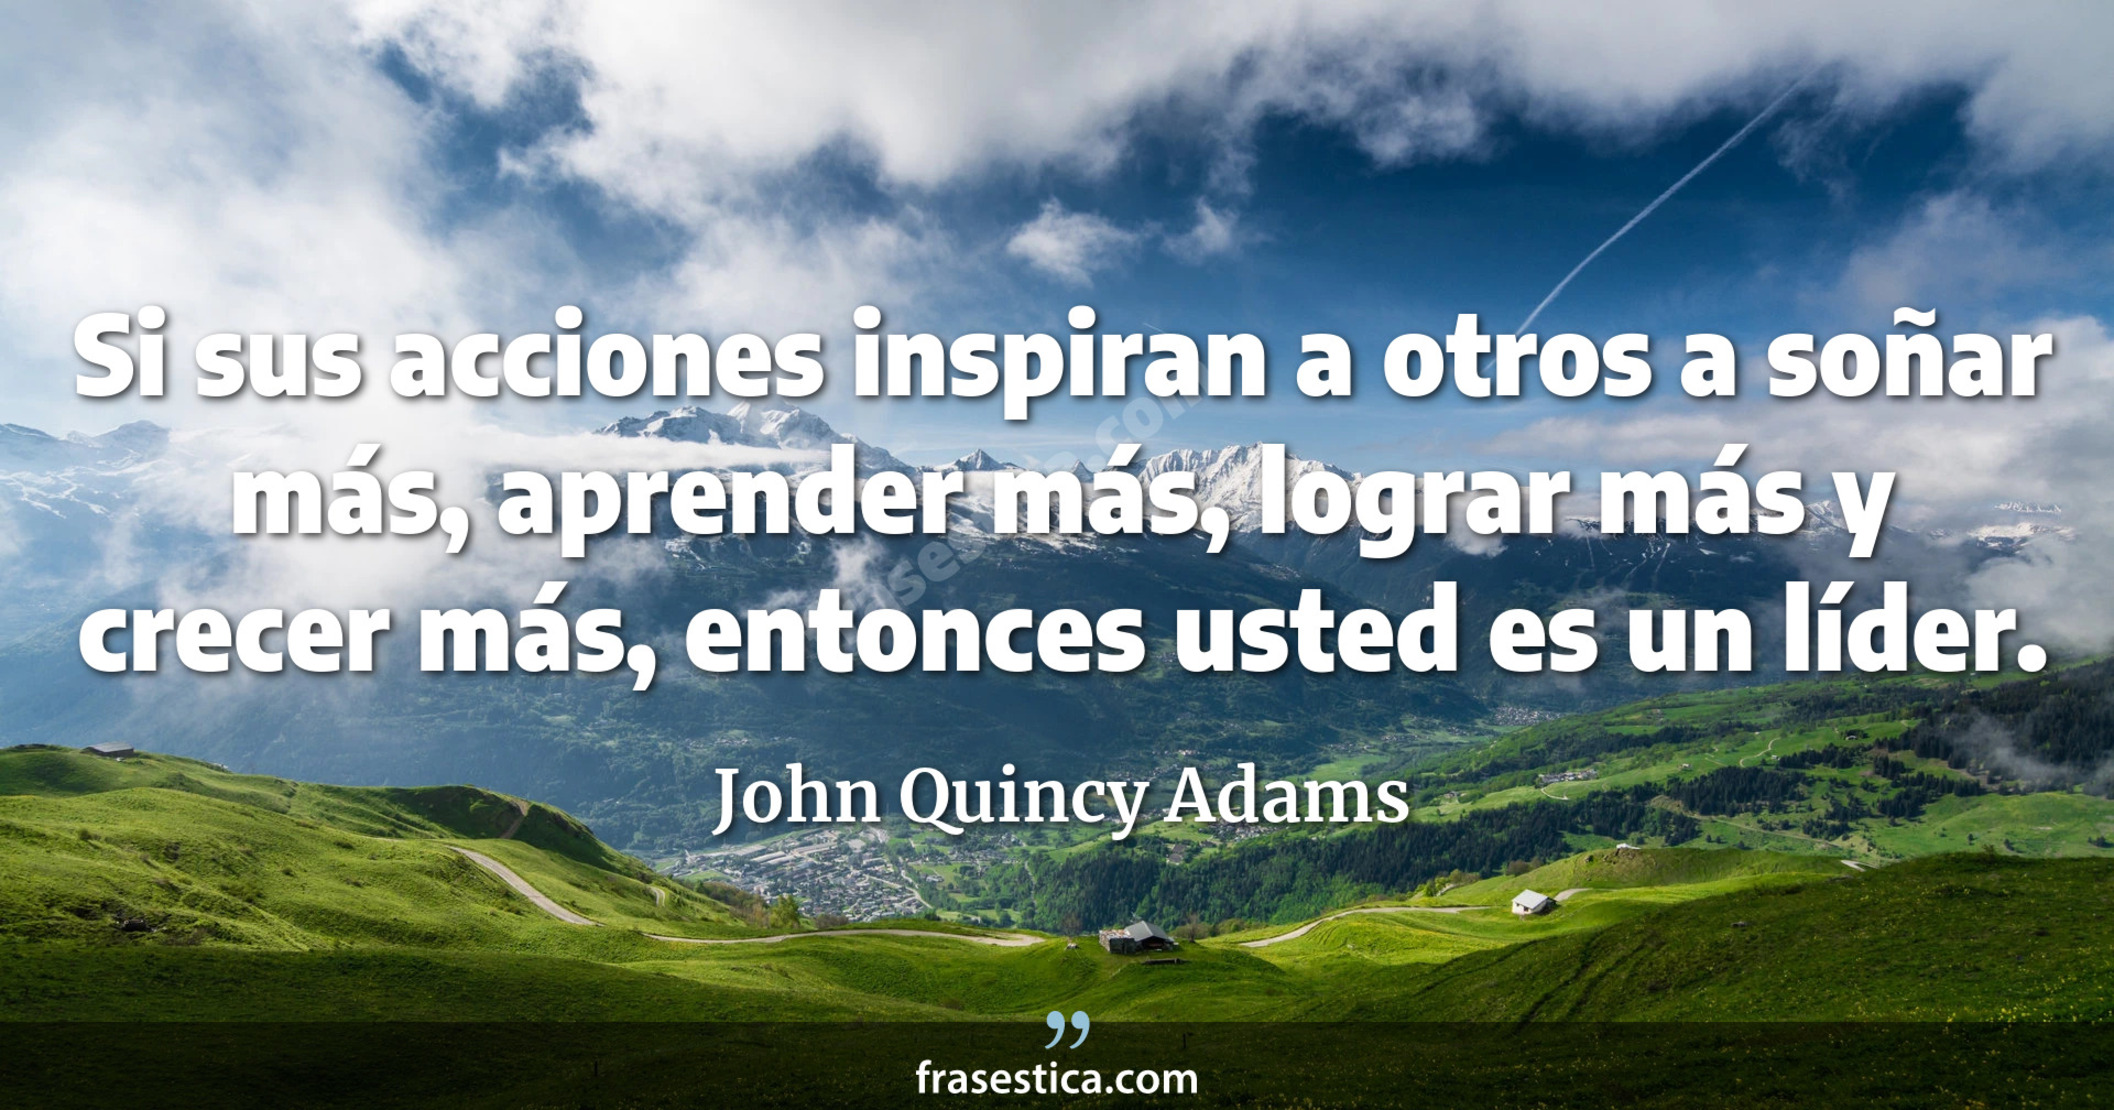 Si sus acciones inspiran a otros a soñar más, aprender más, lograr más y crecer más, entonces usted es un líder. - John Quincy Adams